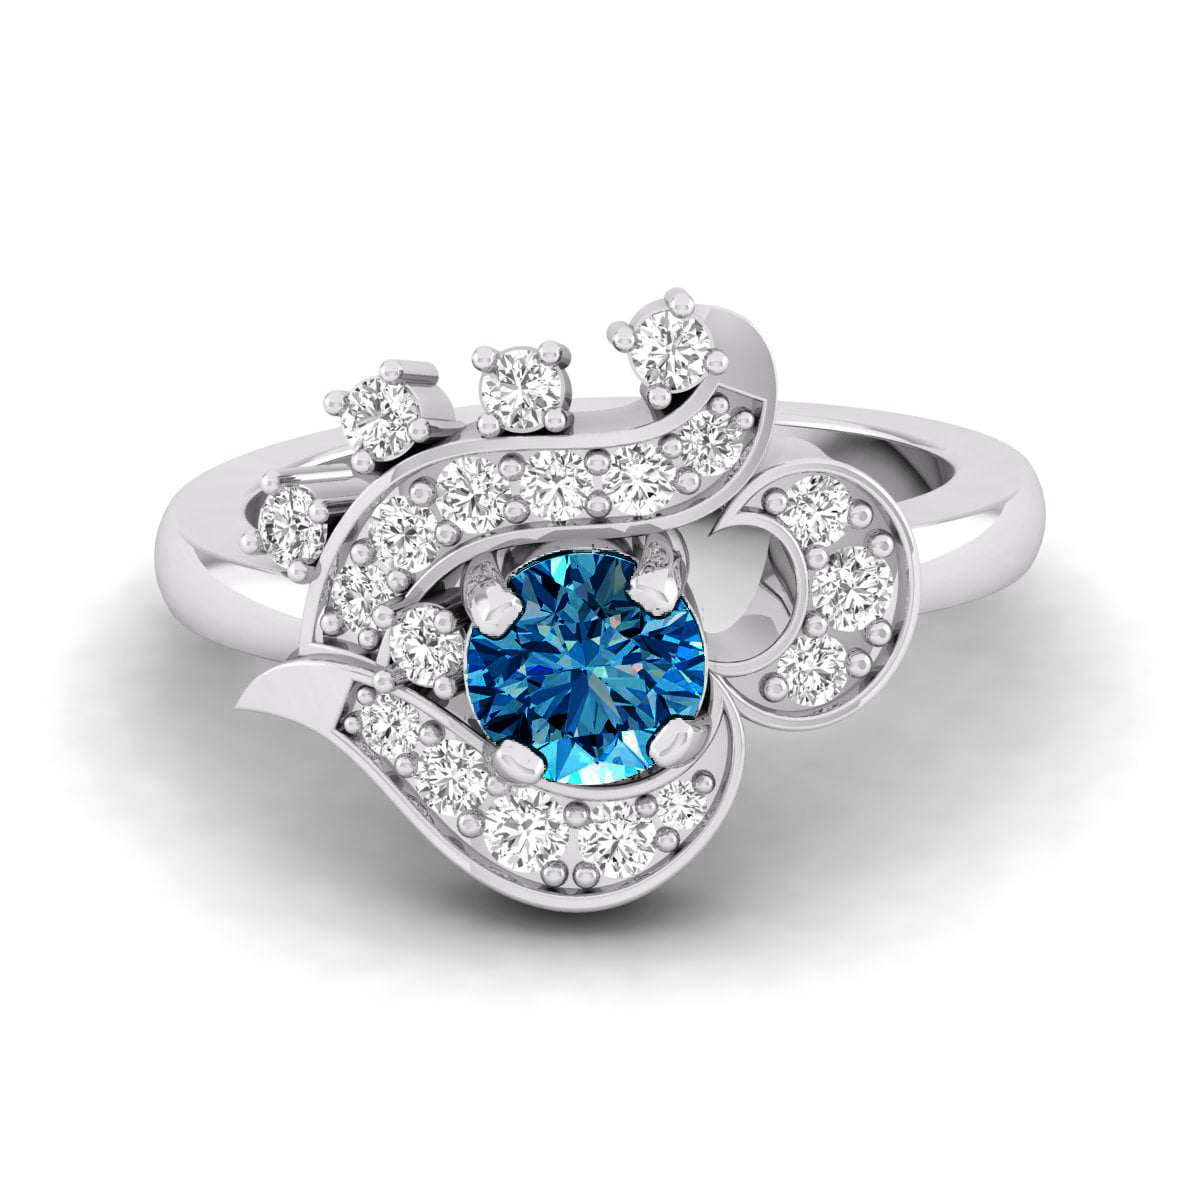 Unique Vintage-inspired Aquamarine Ring